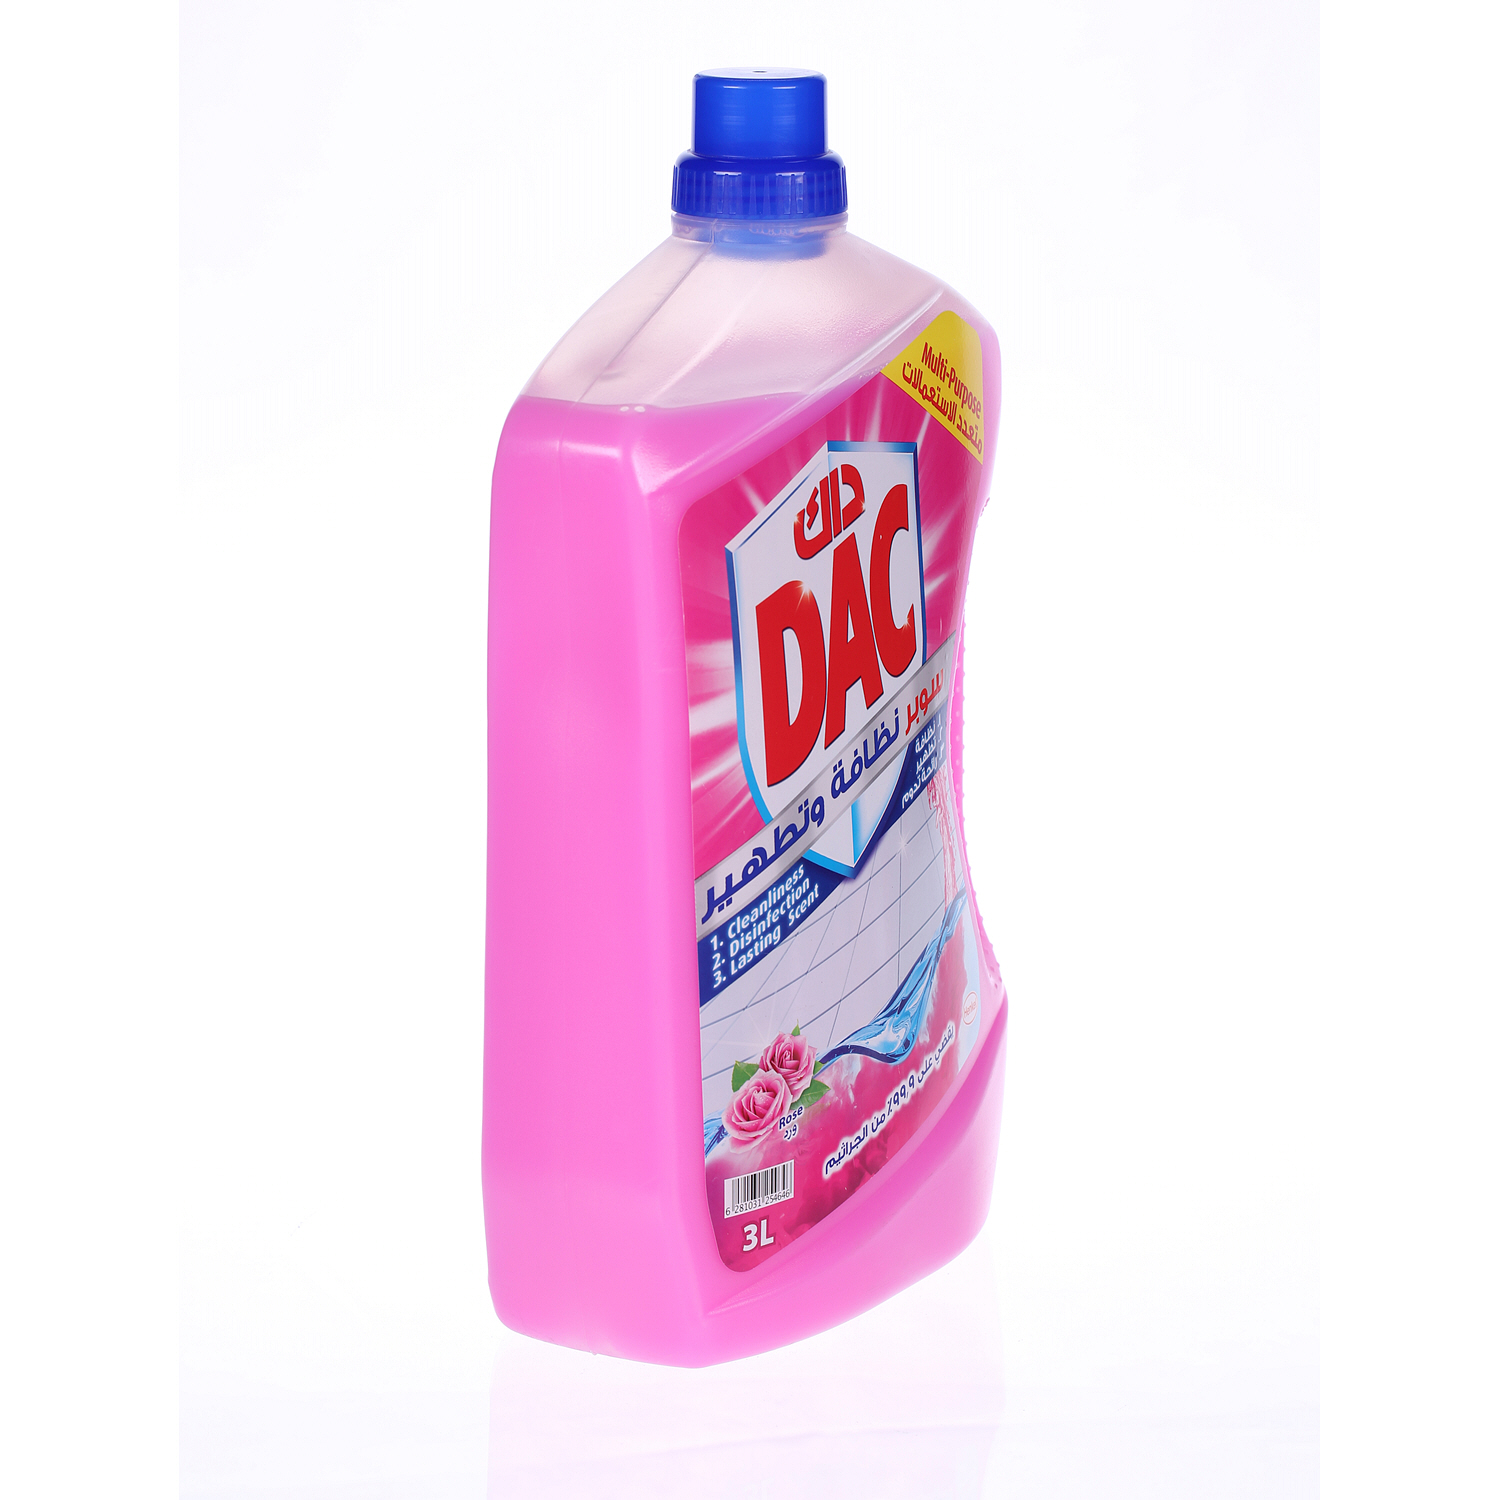 Dac Gold Multi-purpose Disinfectant & Liquid Cleaner Rose 3 L